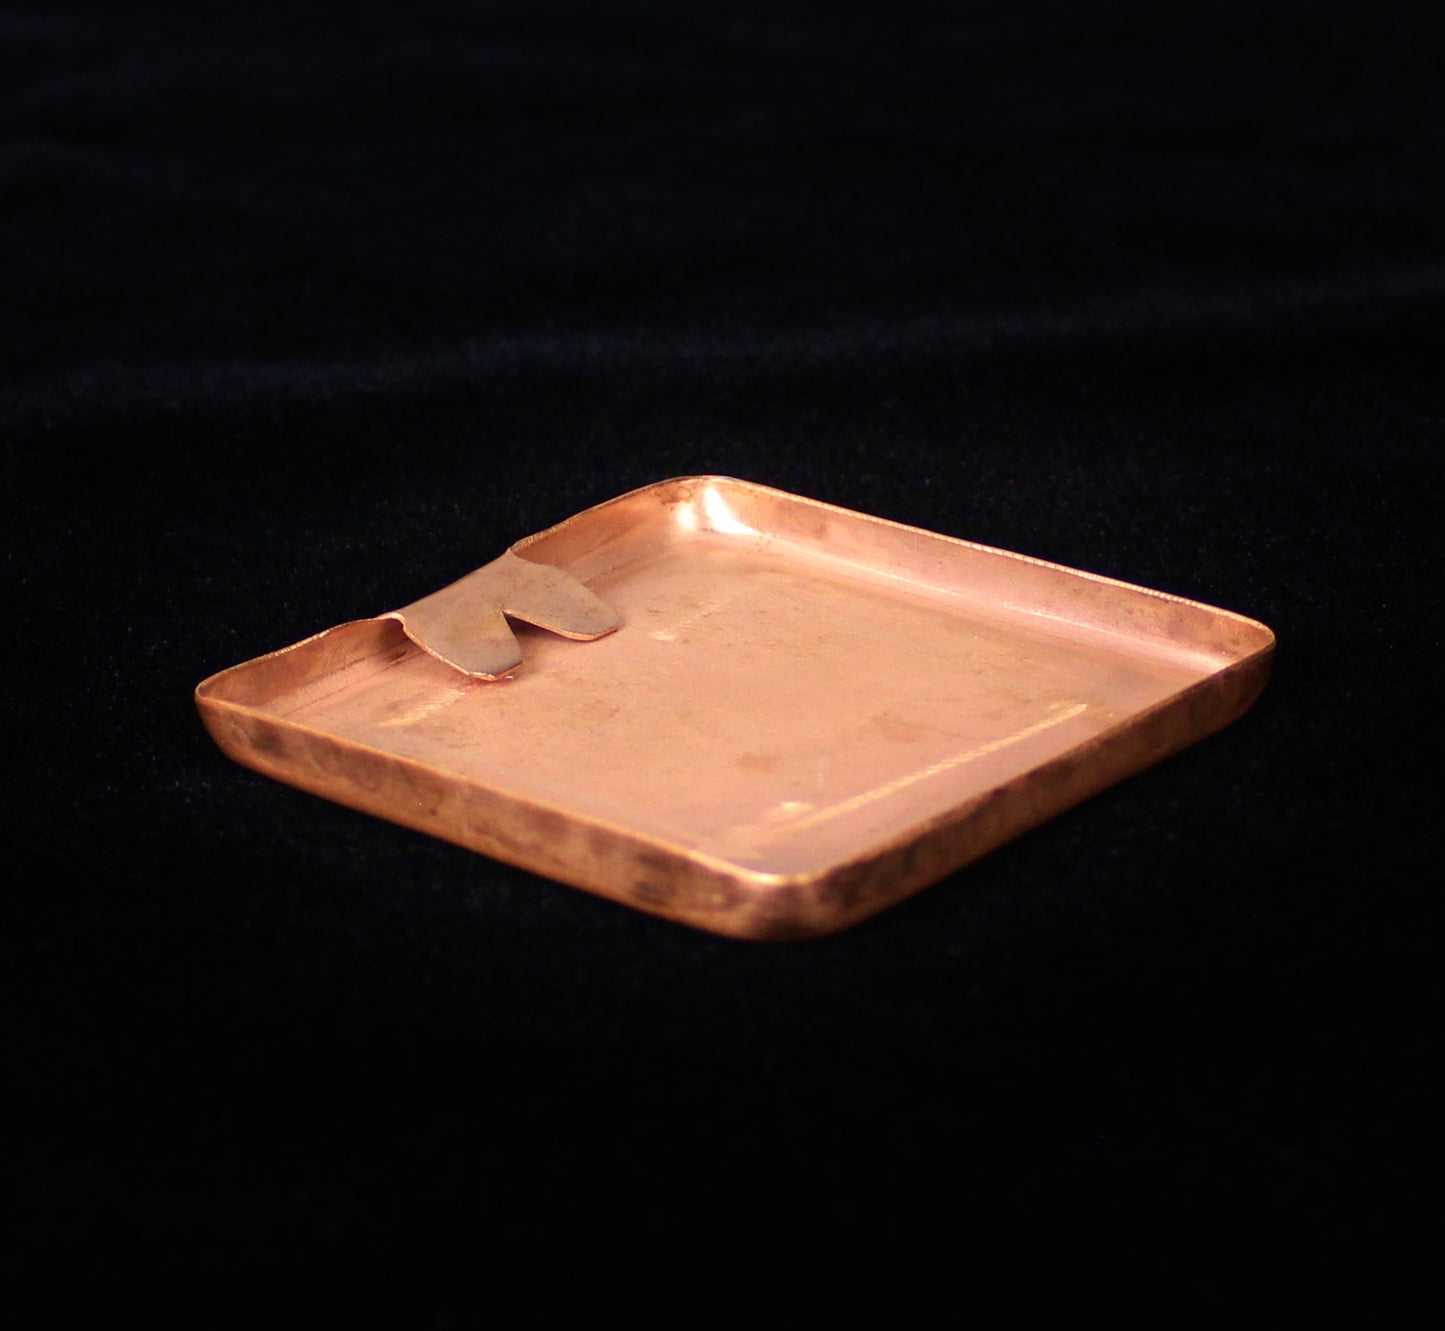 Quail Copper Tile, 3" x 3" x 1/4"